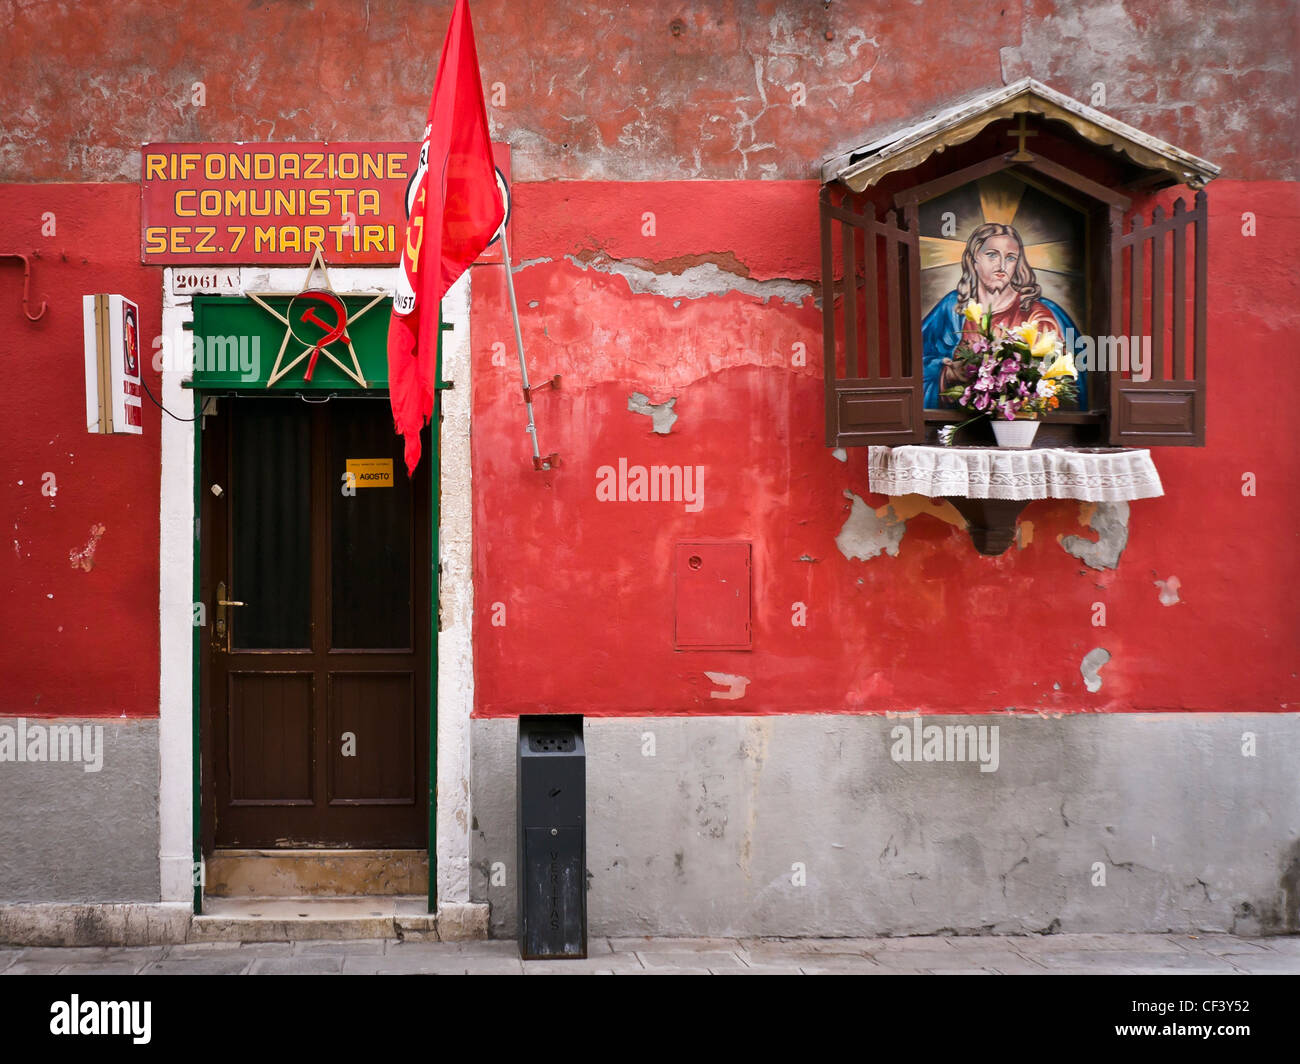 Altare di strada sulla parete del partito comunista italiano ufficio nel quartiere di Castello - Venezia, Venezia, Italia e Europa Foto Stock